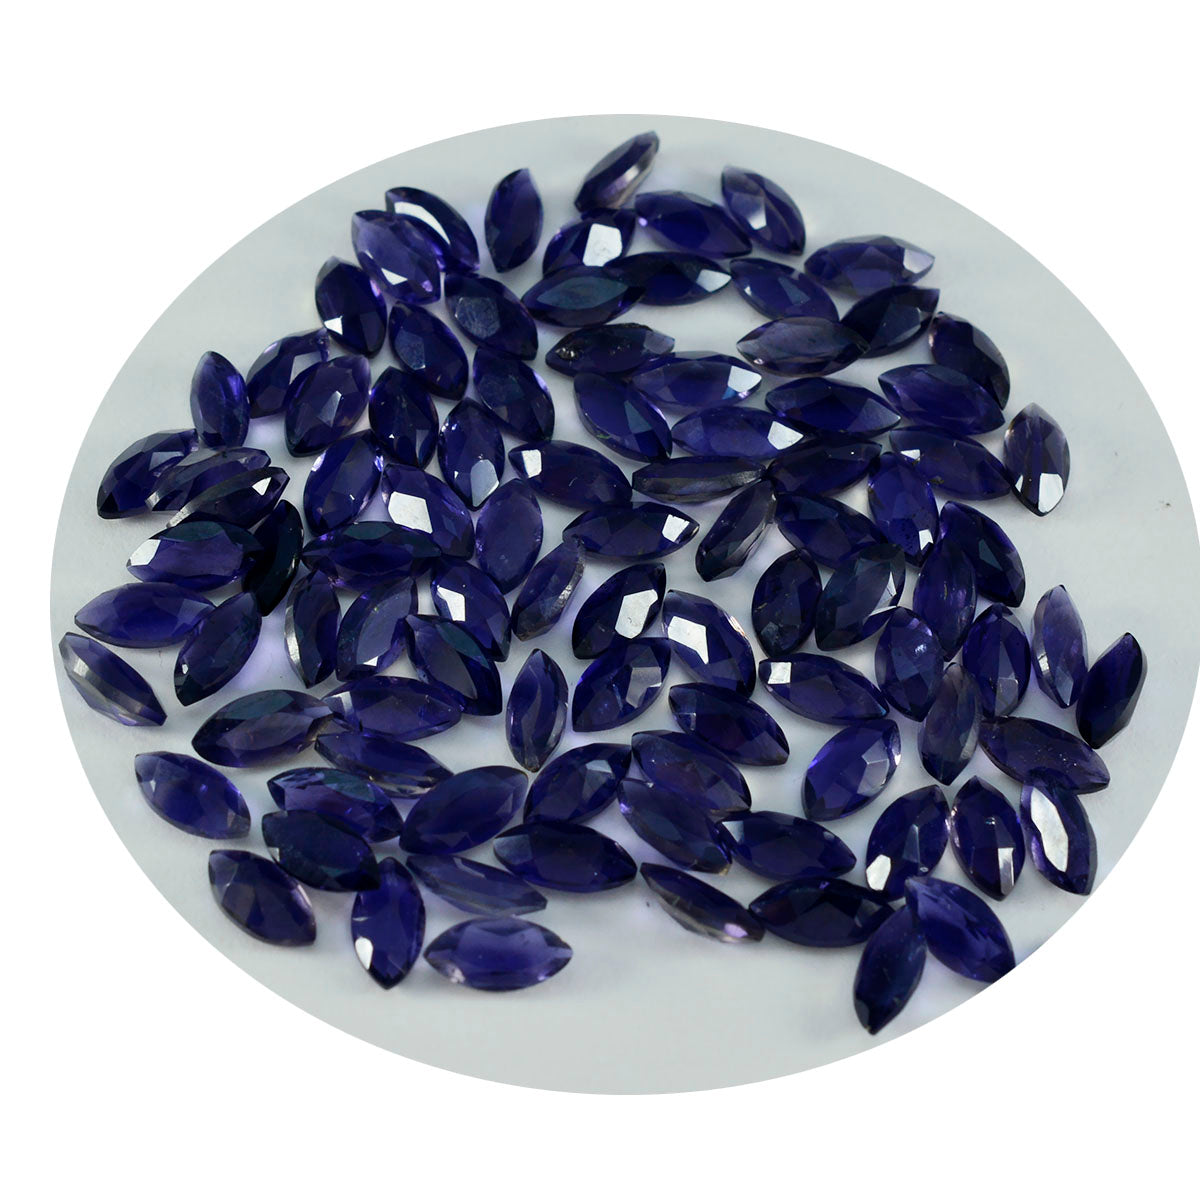 Riyogems 1 pièce d'iolite bleue à facettes 4x8mm en forme de marquise, belle pierre précieuse de qualité